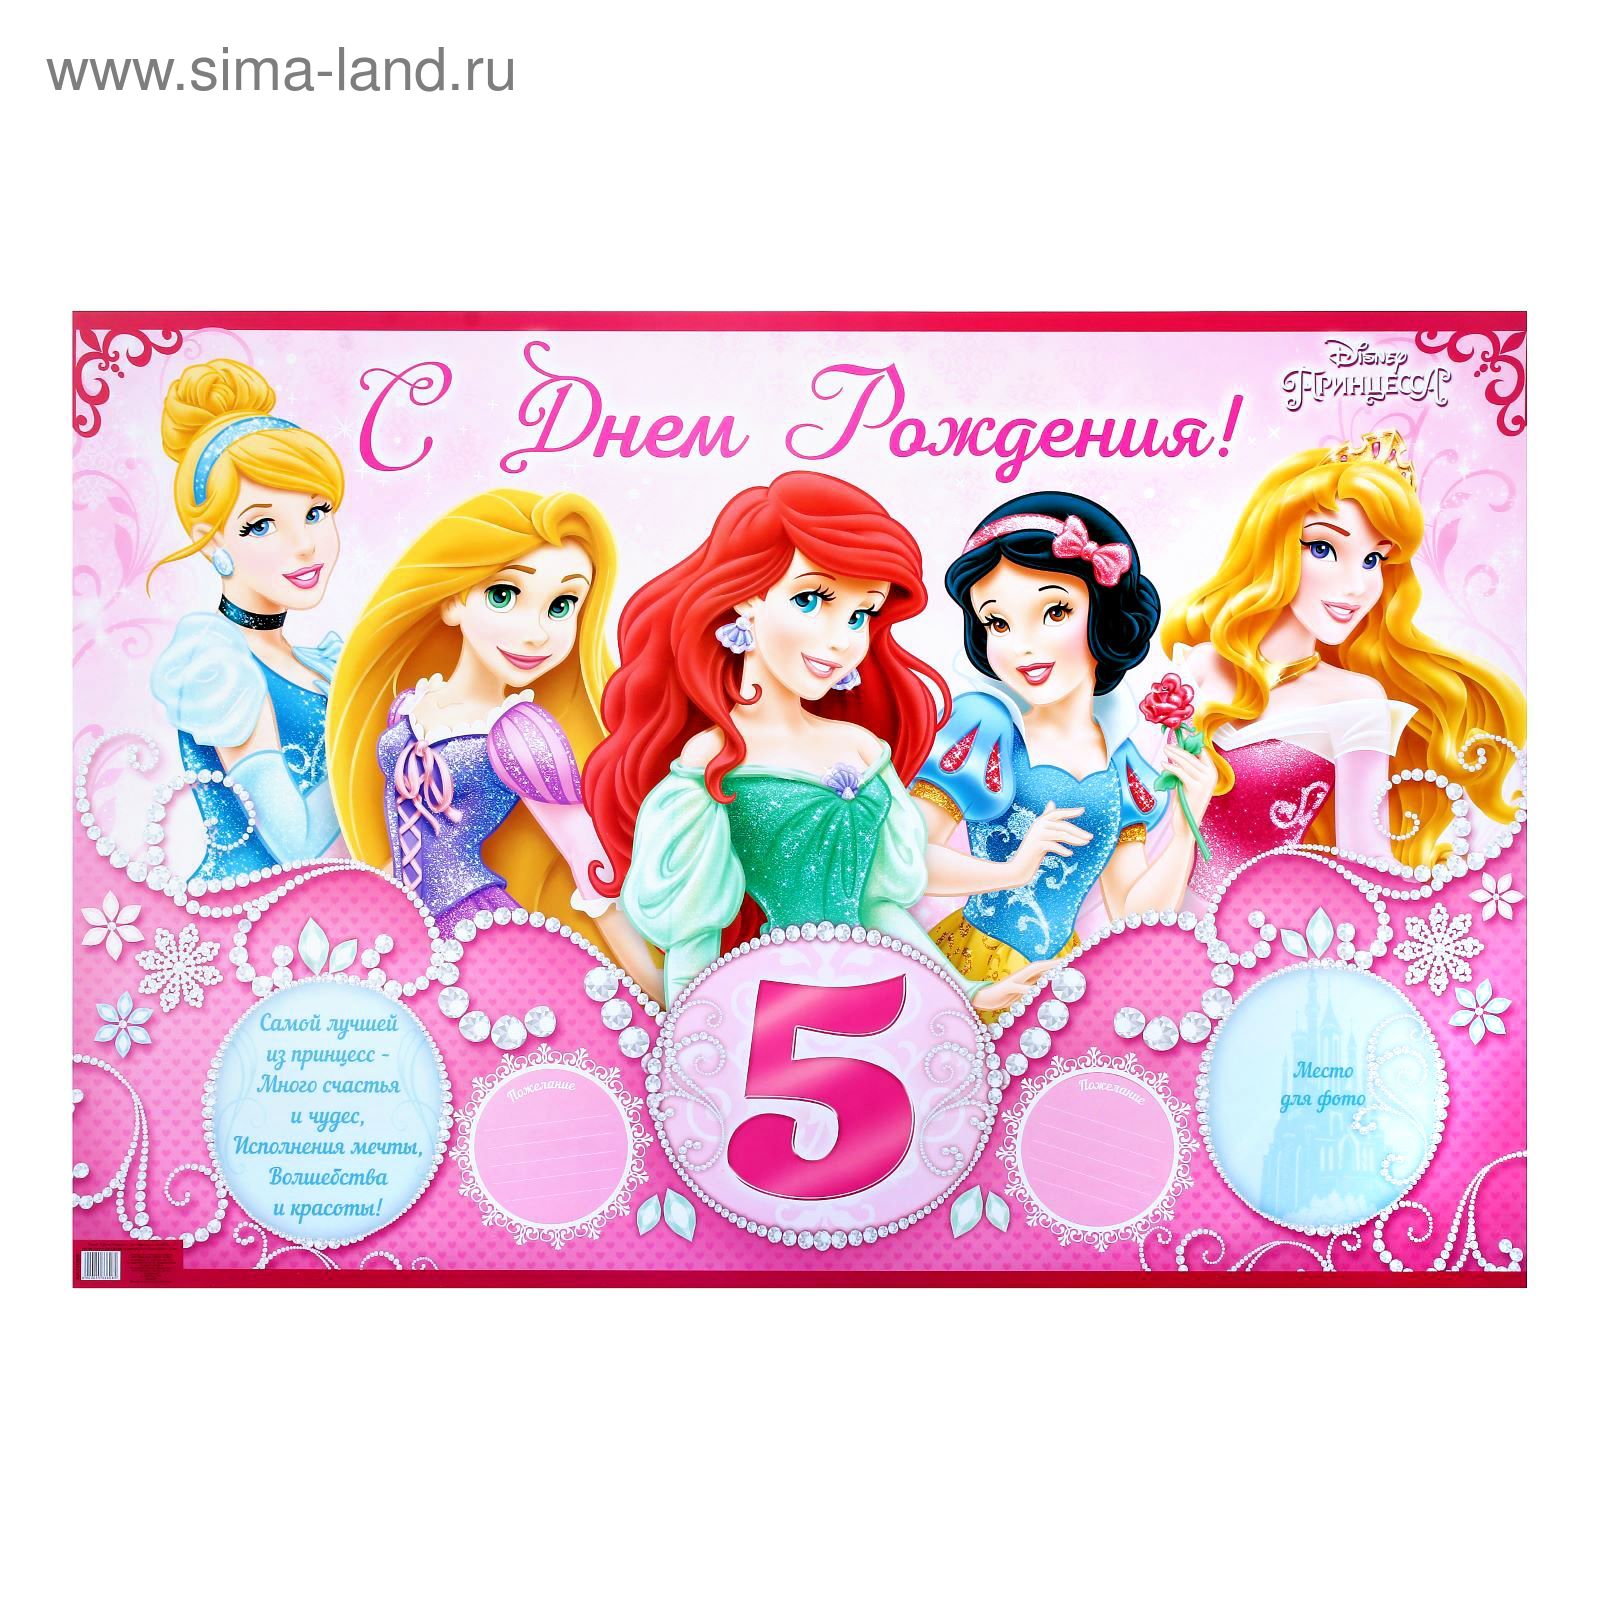 Родителям с днем рождения дочки 5 лет. С днём рождения 5 лет девочке. Плакат с днем рождения 5 лет. День рождения принцессы. С днем рождения принцесса 5 лет.